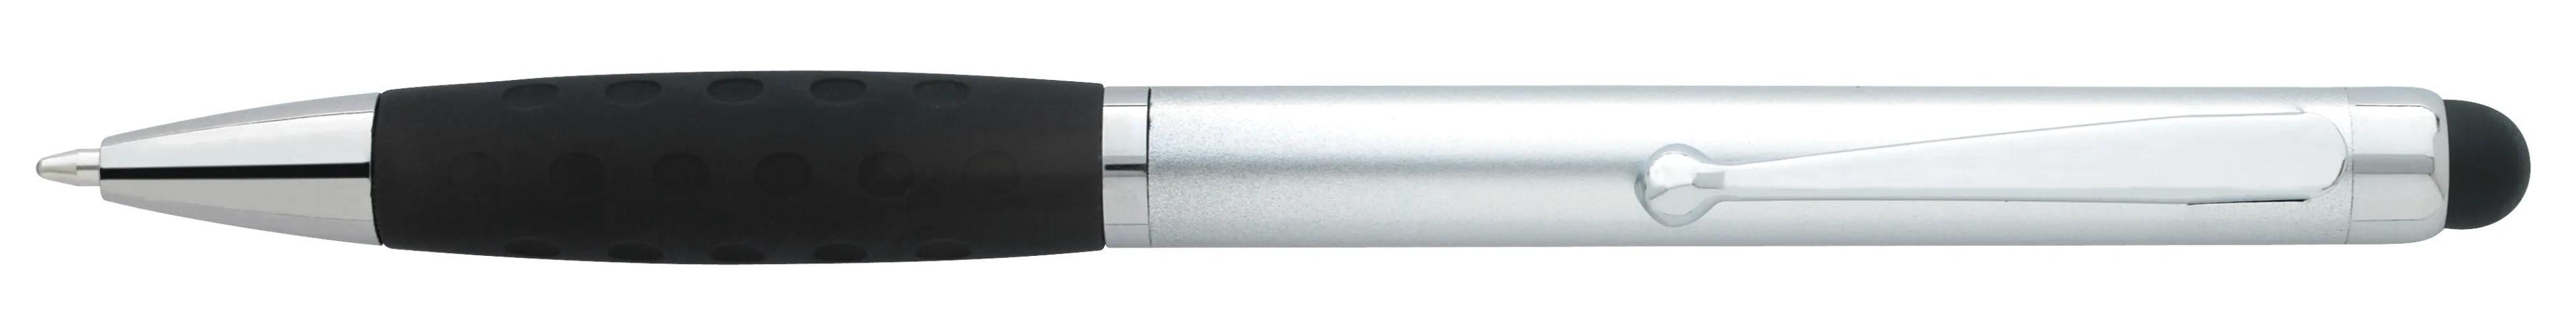 Silver Stylus Grip Pen 1 of 11